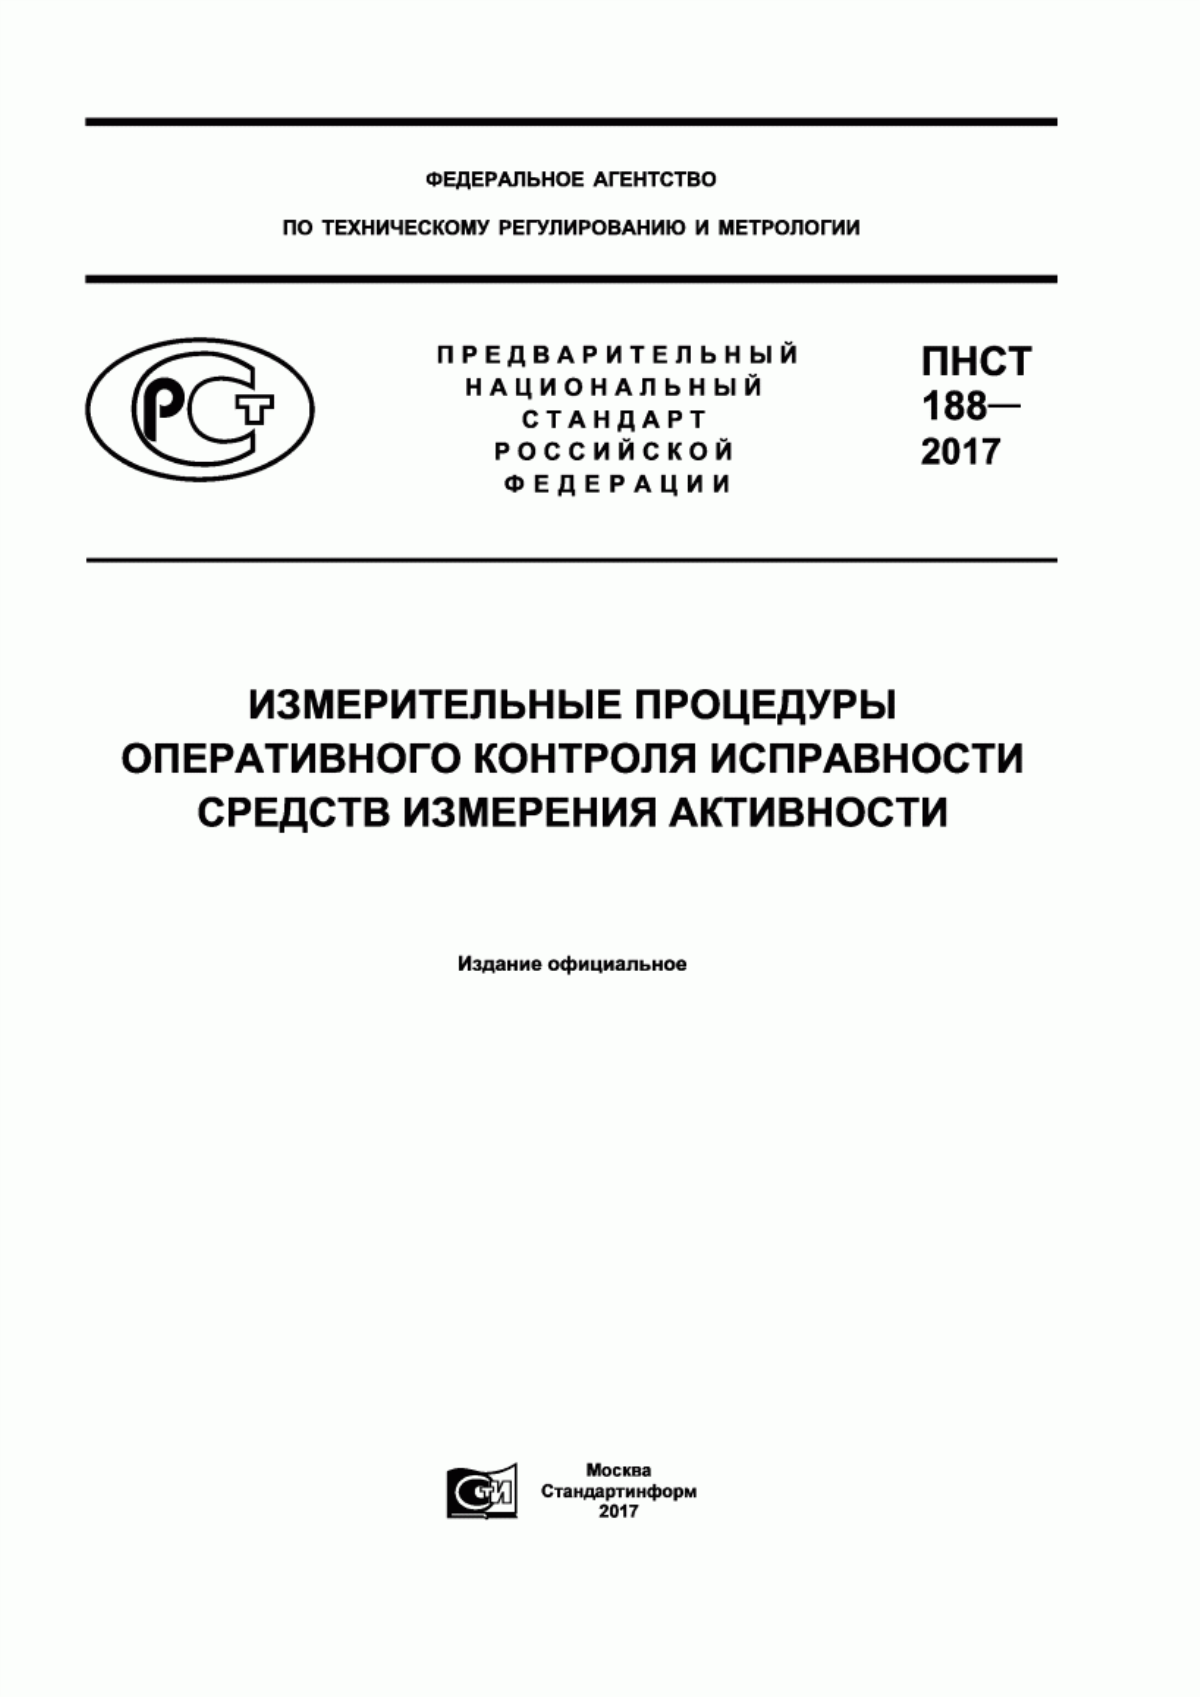 ПНСТ 188-2017 Измерительные процедуры оперативного контроля исправности средств измерения активности